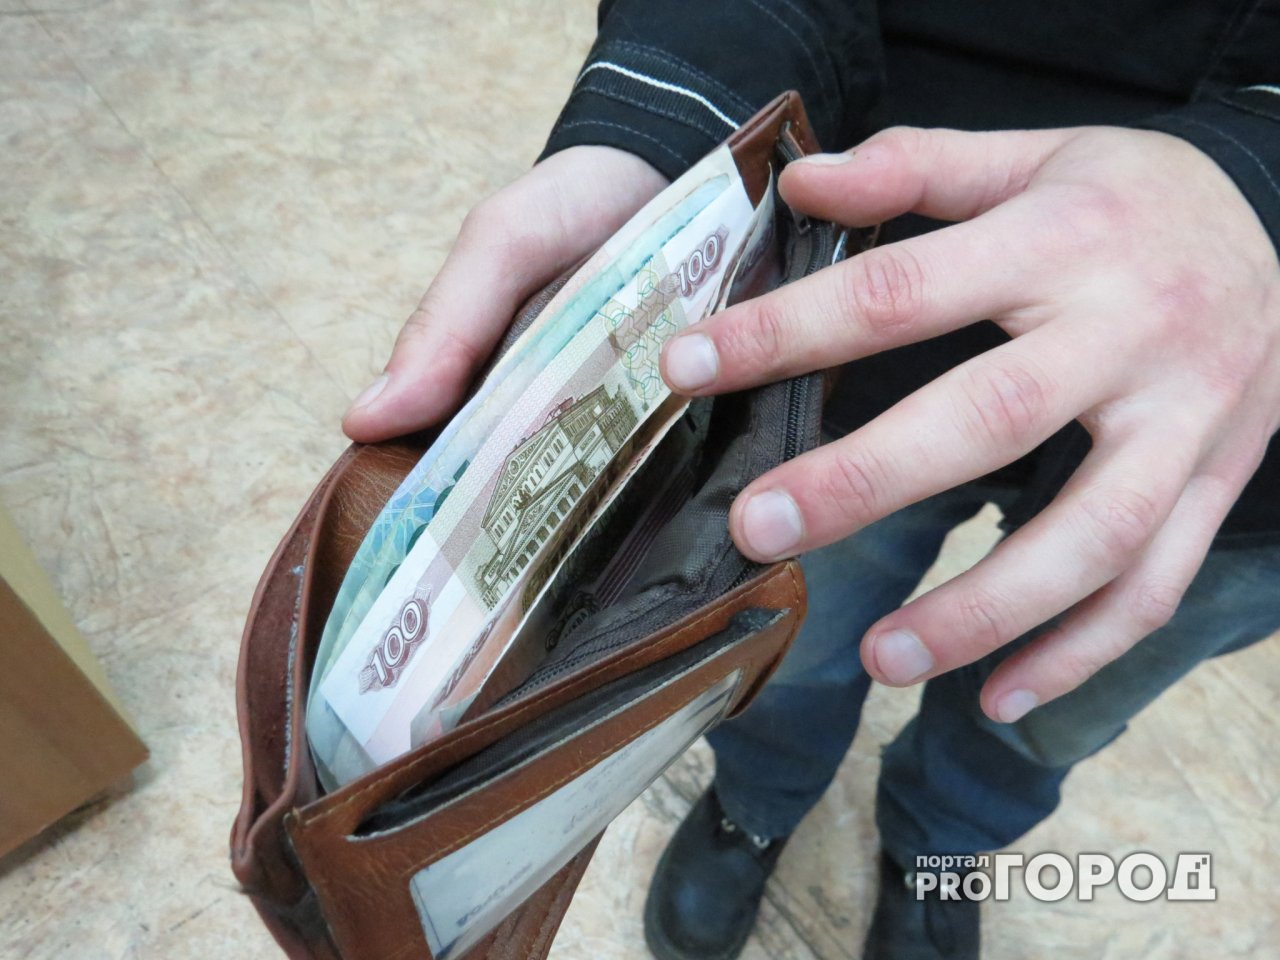 Пытаясь сохранить деньги, пензячка потеряла 98 тысяч рублей